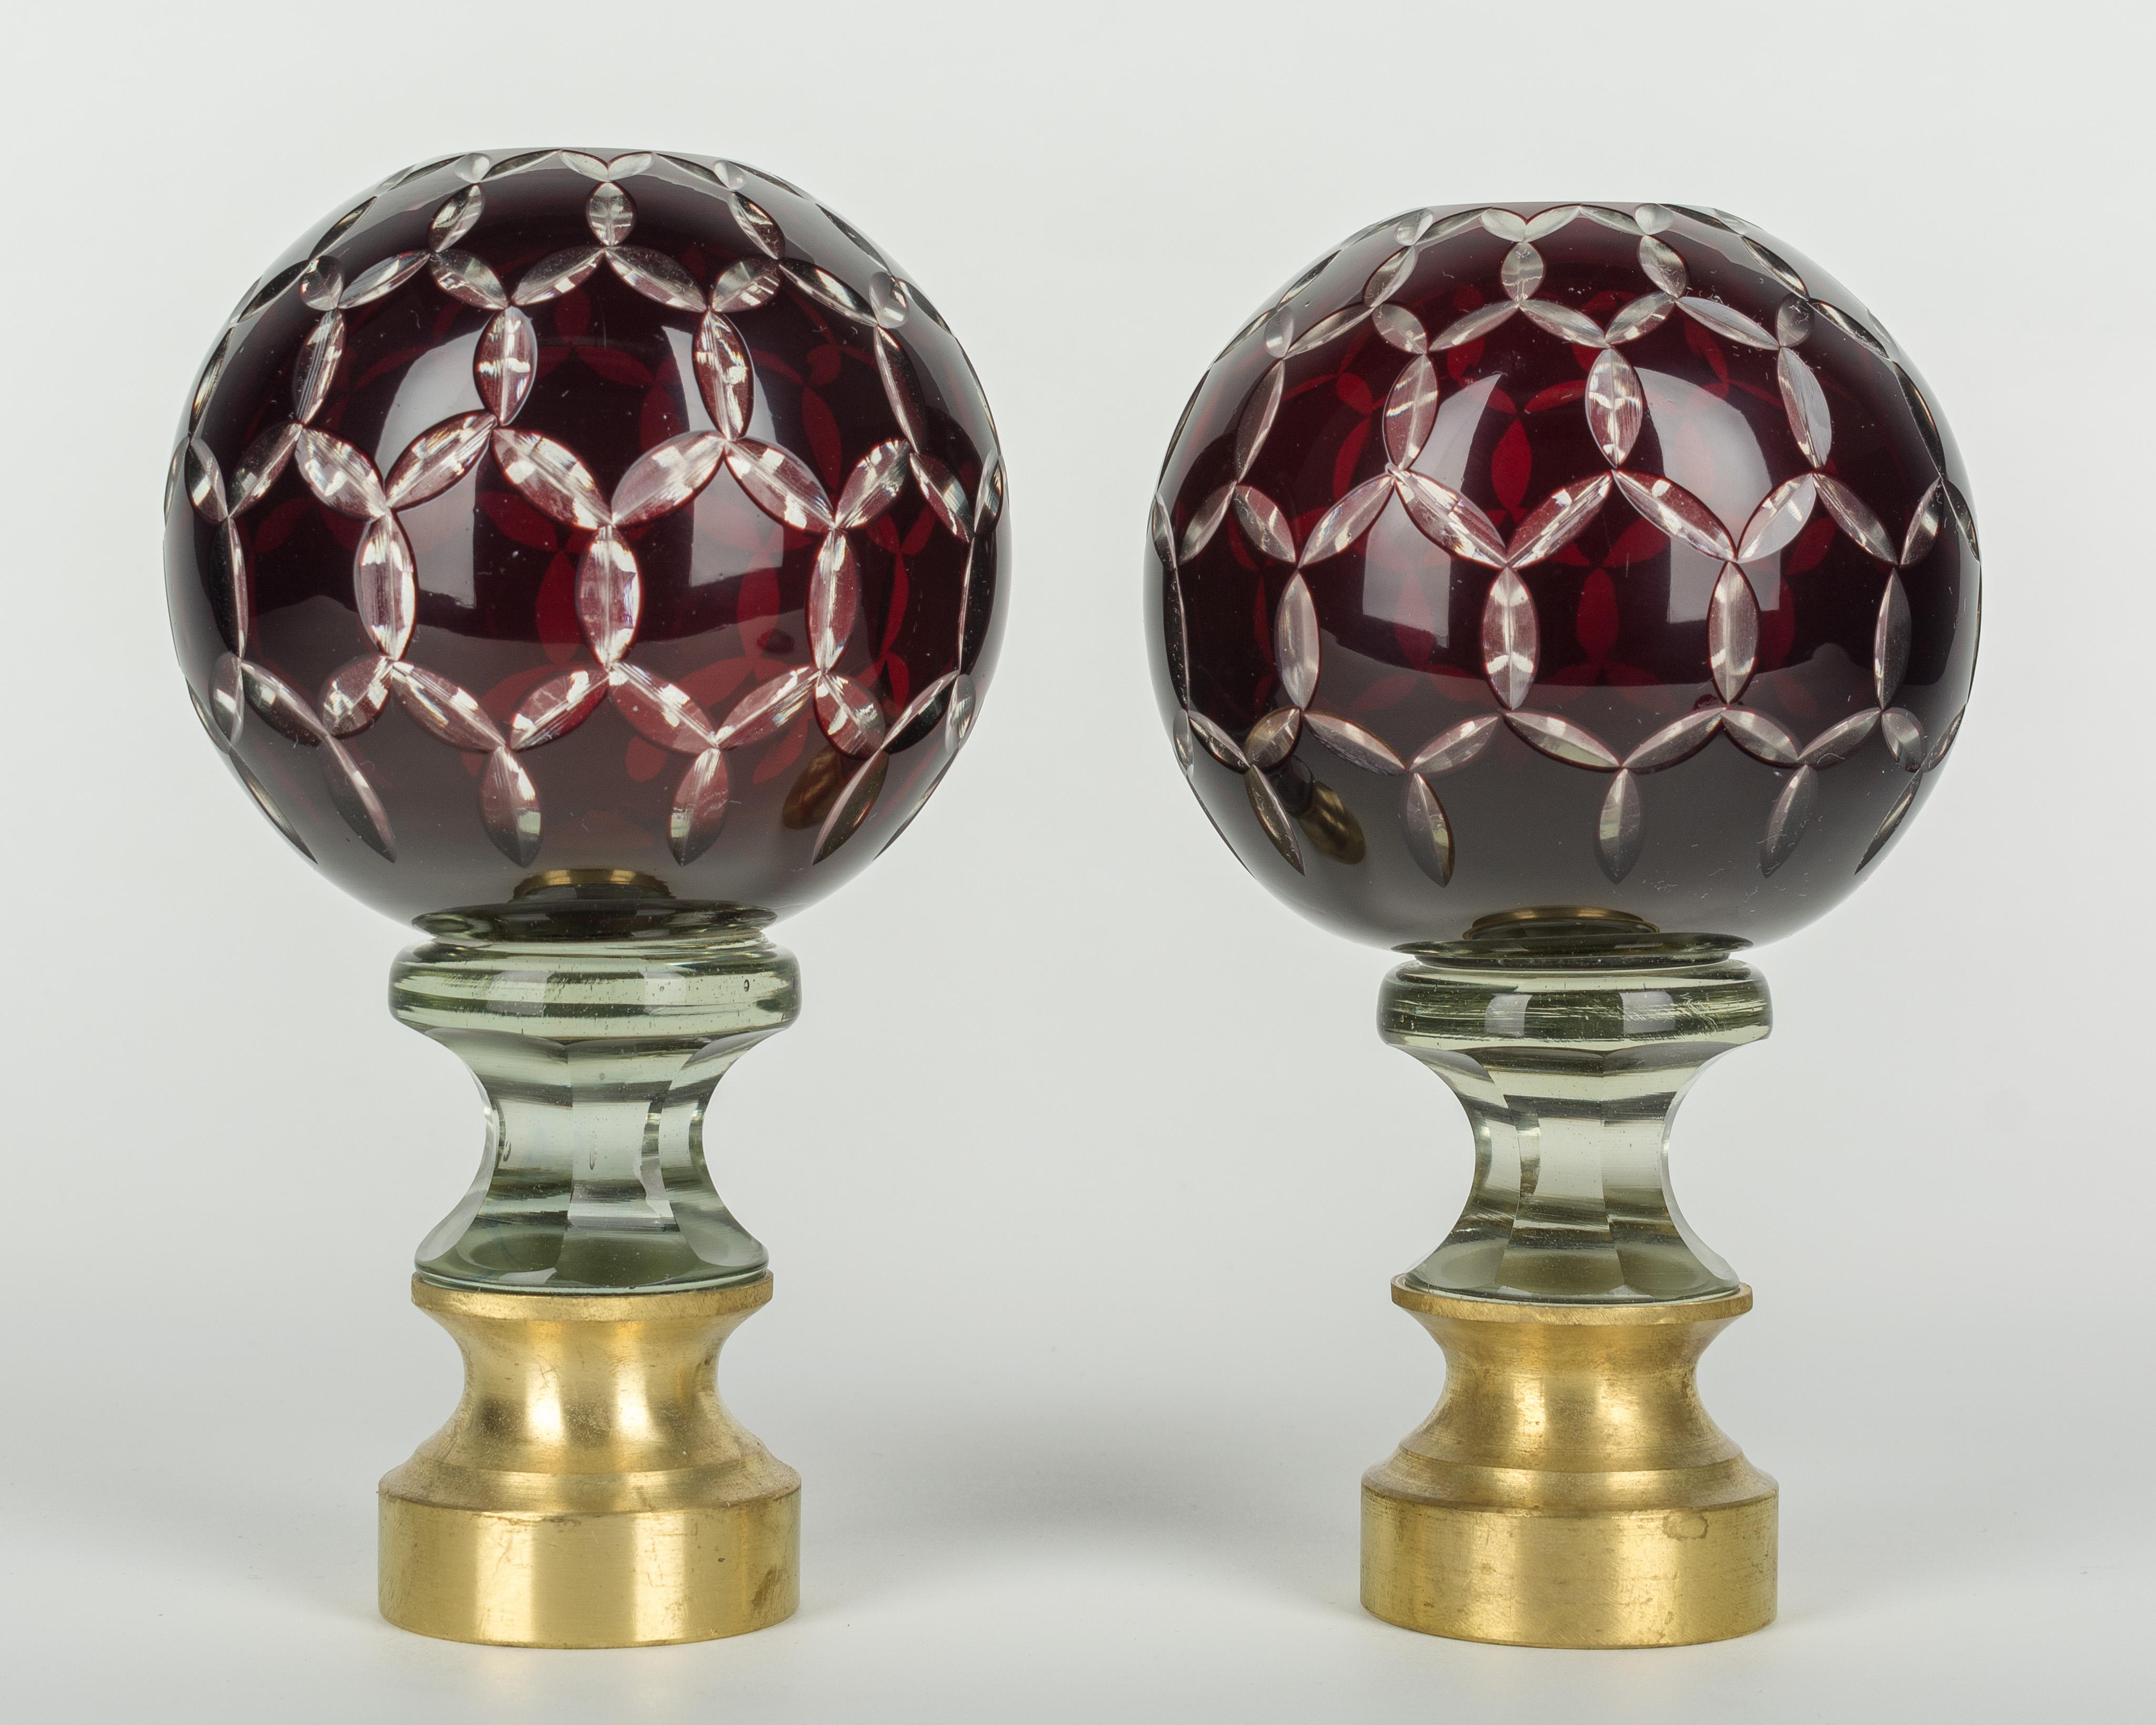 Ein Paar französische Boules d'Escalier aus geschliffenem Glas aus dem frühen 20. Jahrhundert. Klares Glas mit einer äußeren Schicht aus tiefem Rubinrot und einem mehrfach geschliffenen Stern an der Spitze. Diese wundervollen Endstücke wurden als